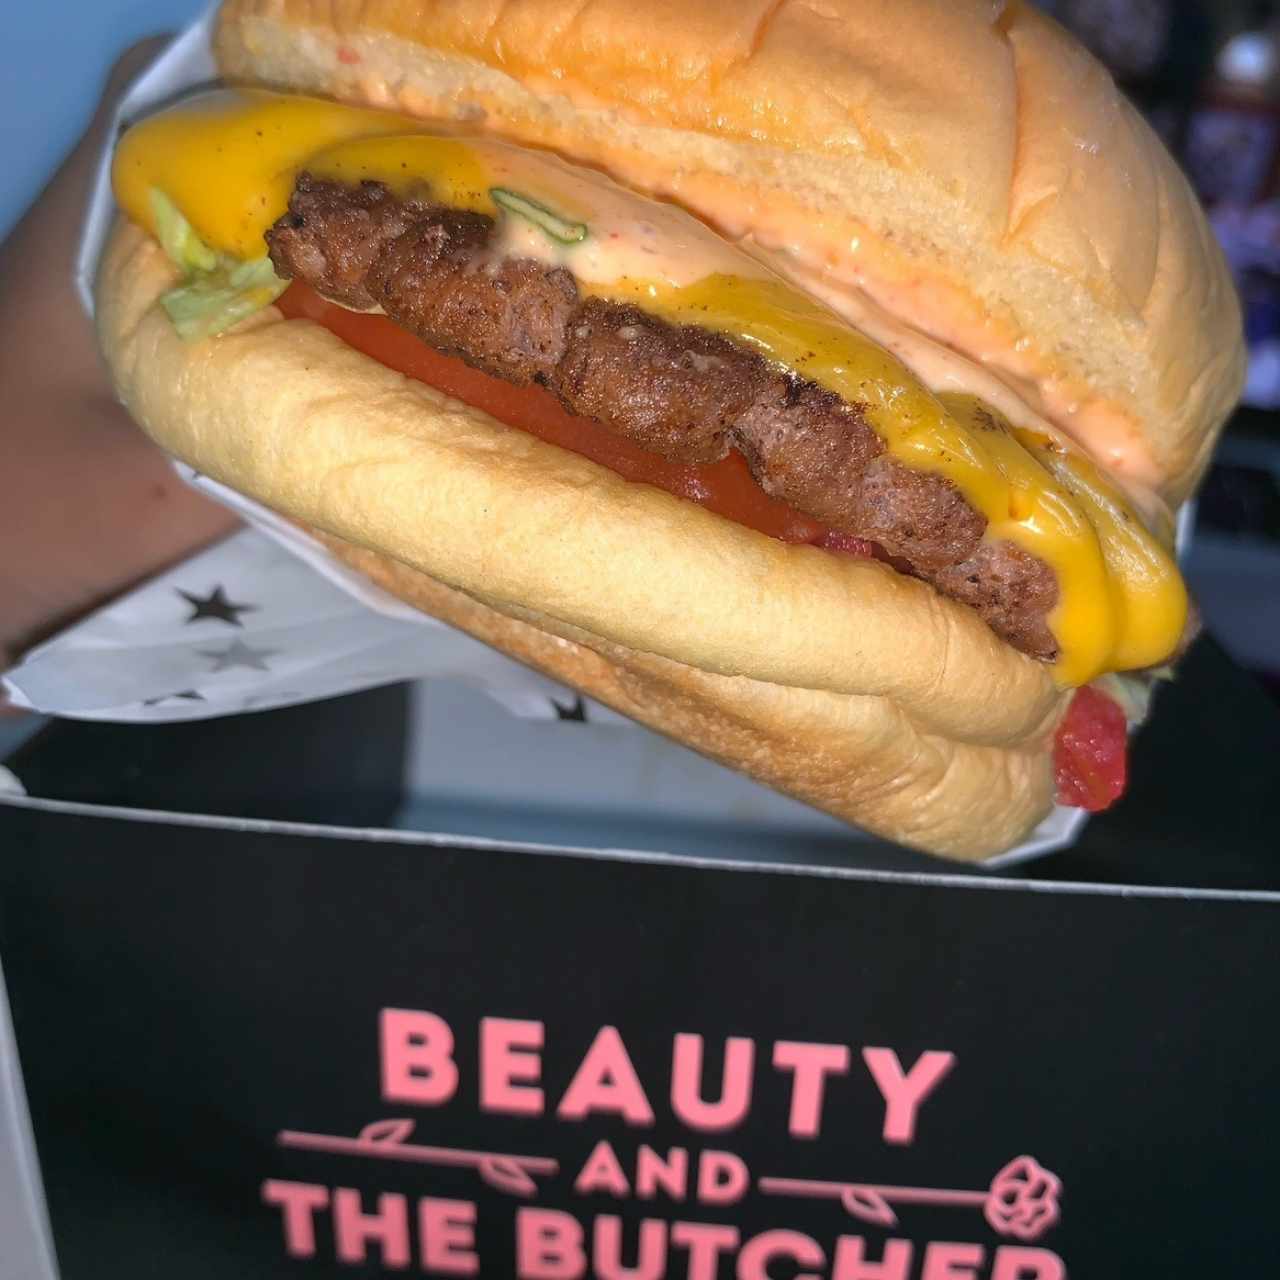 Classic Cheeseburger - Sencilla